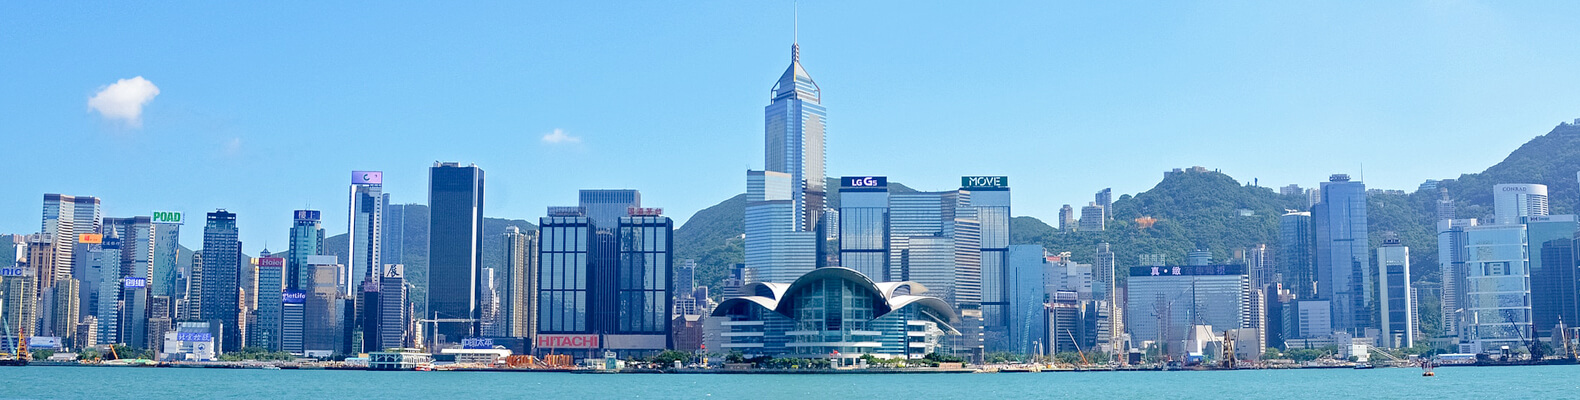 香港島エリアにある美術館や博物館